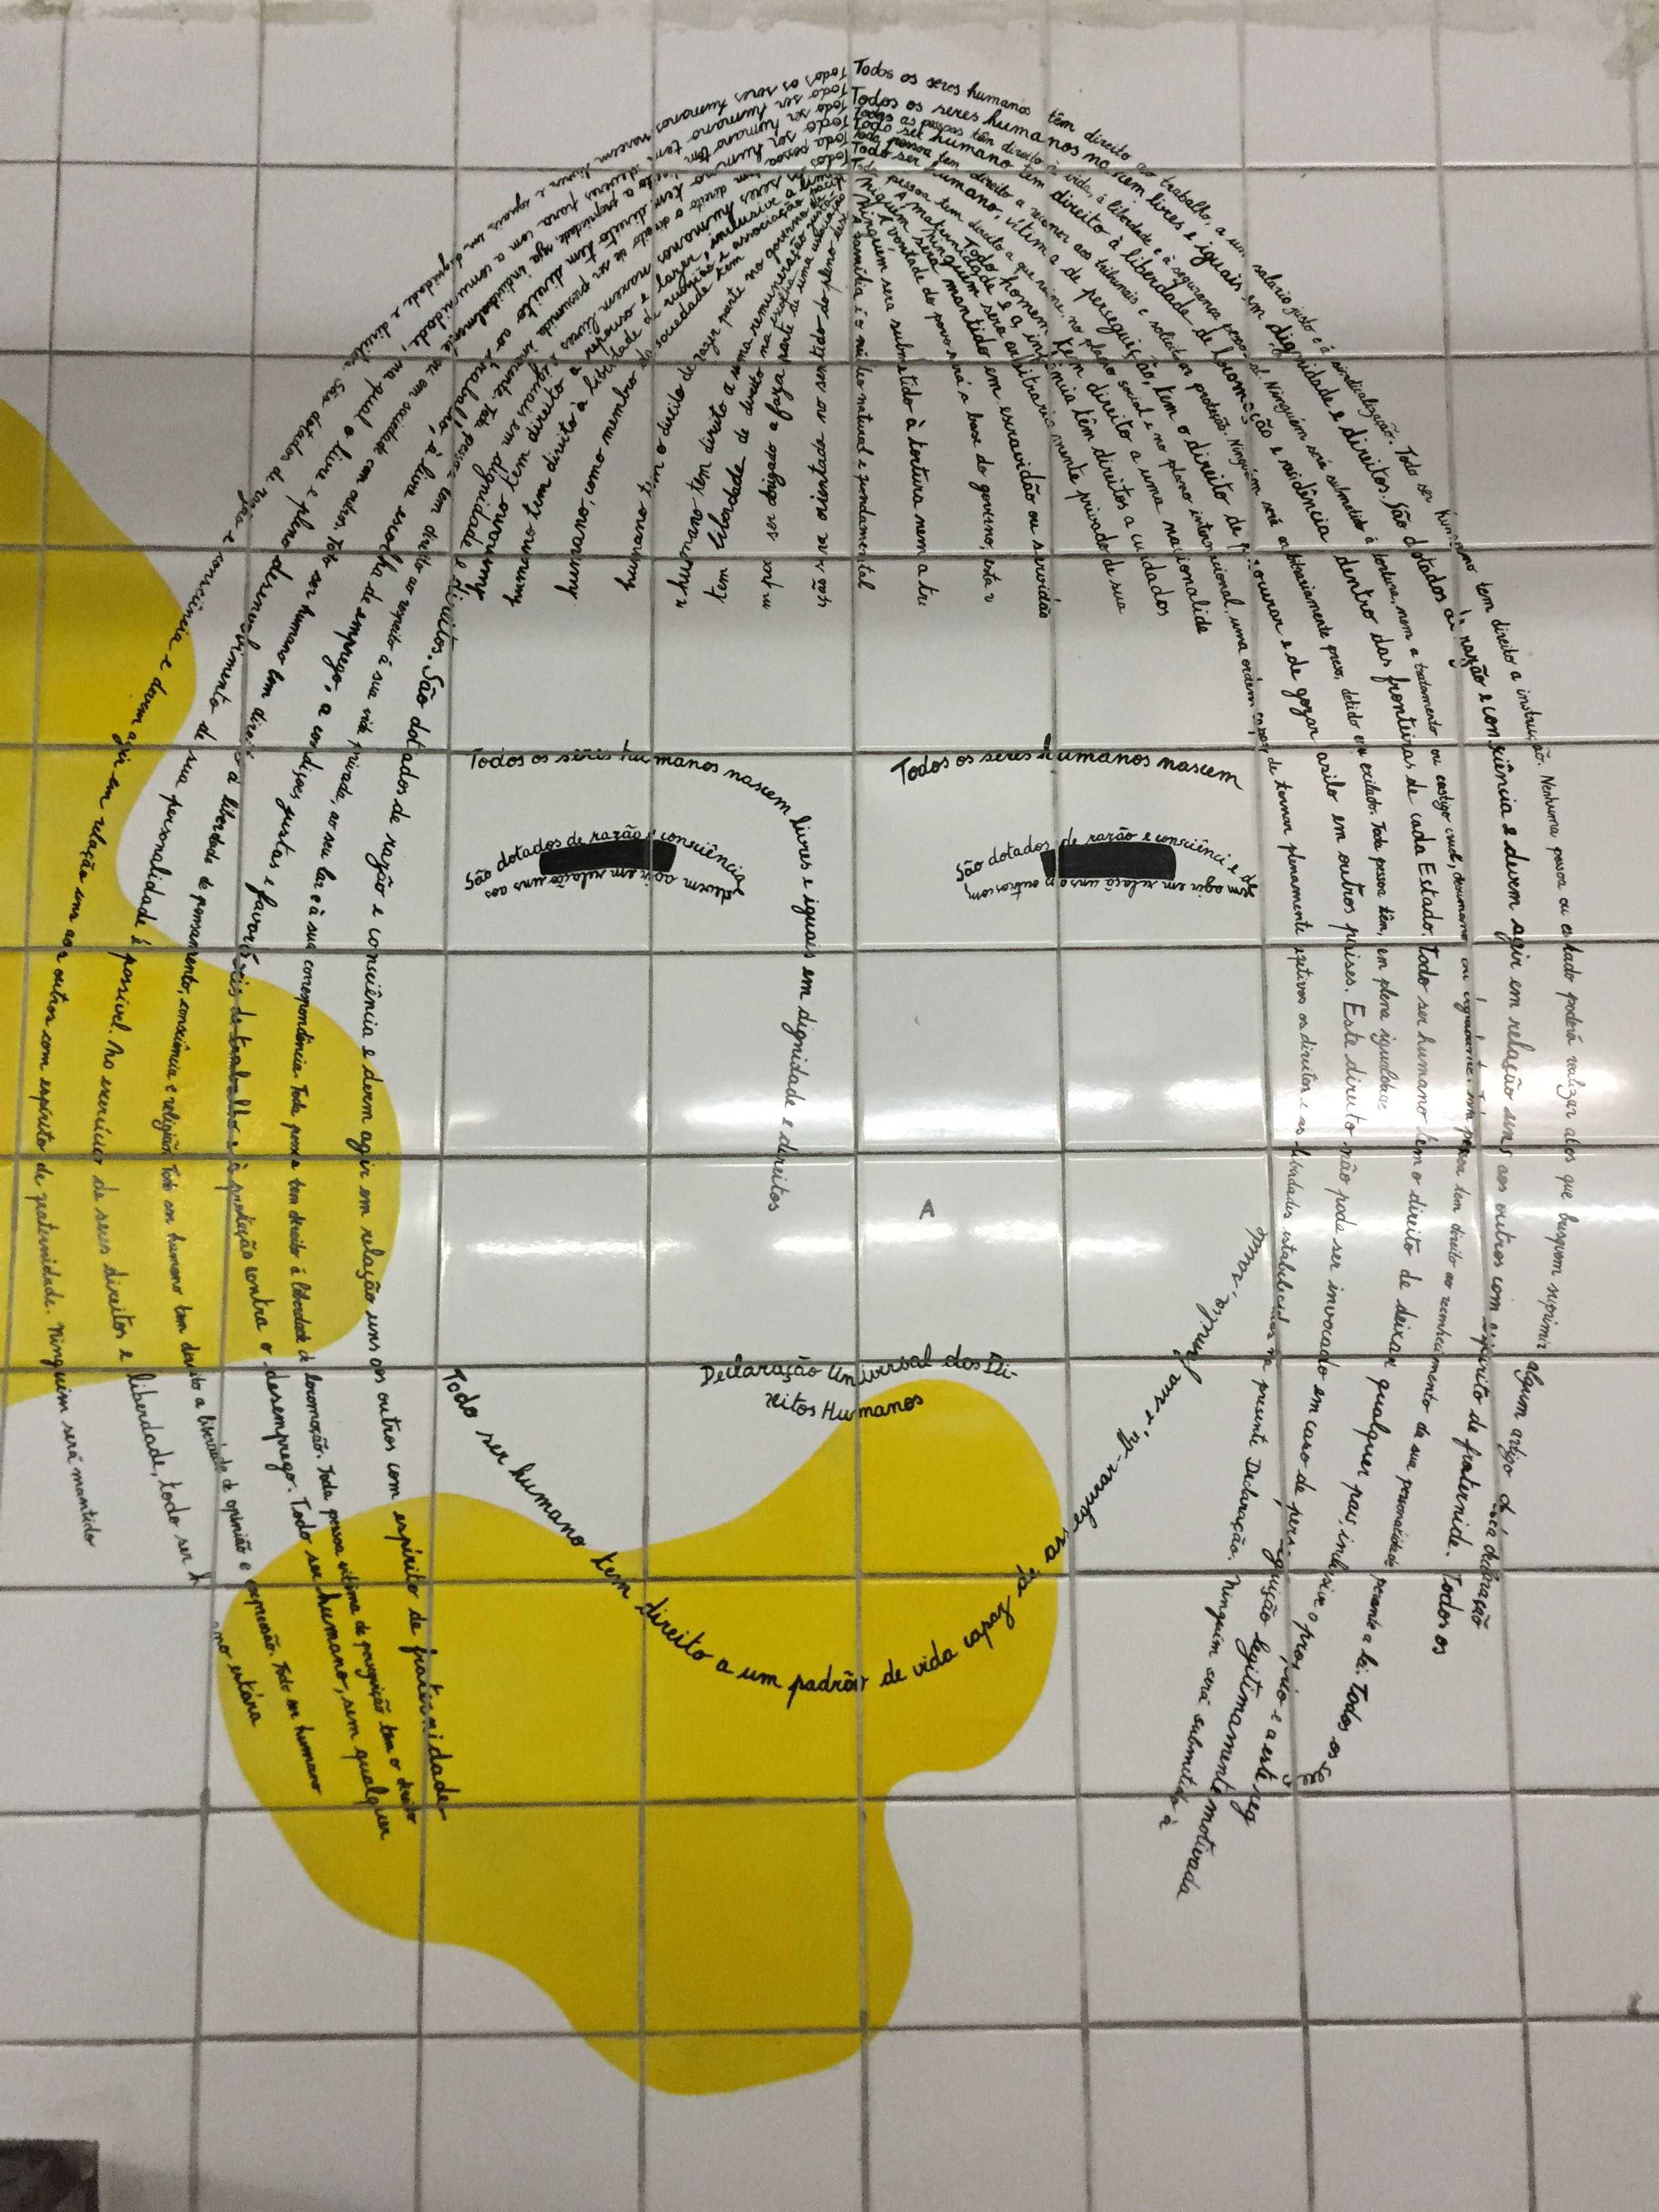 地铁一角英语绘画图片